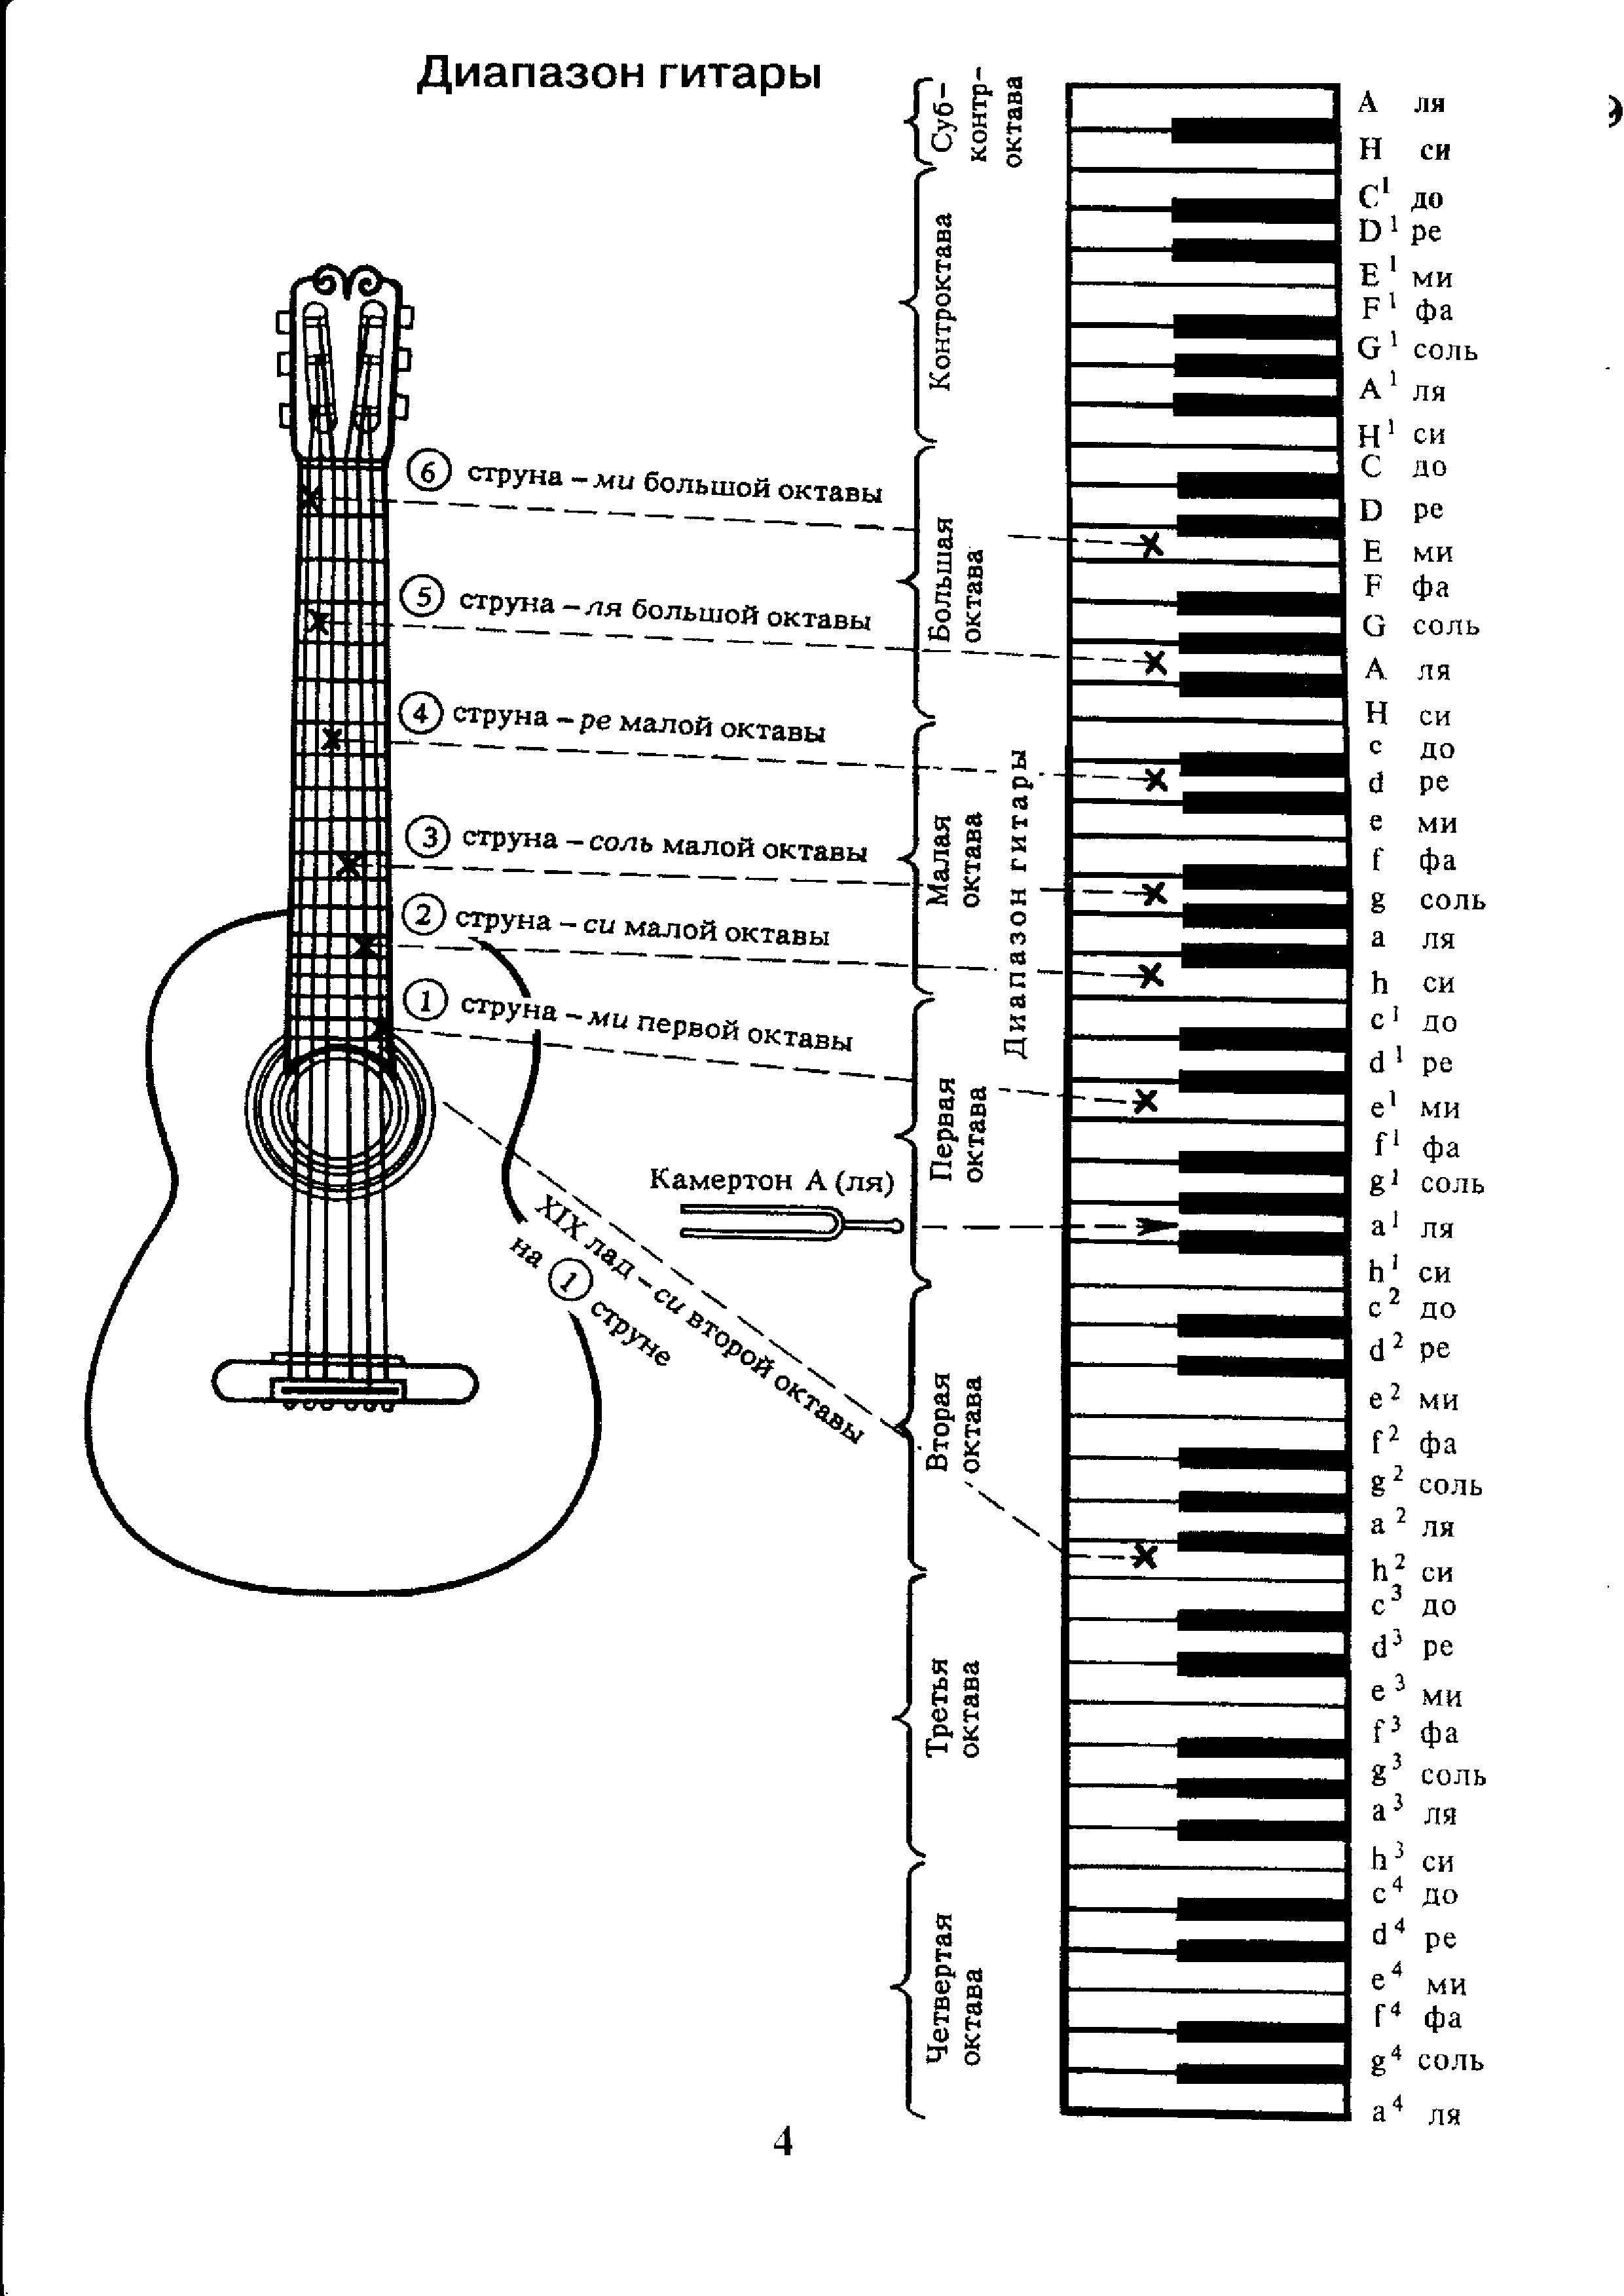 Какие ноты на струнах гитары. Аппликатура аккордов для гитары 6 струн для начинающих. Ноты на гитарном грифе 6 струнной. Лады на 6 струнной гитаре для начинающих. Схема гитары классической 6 струнной.